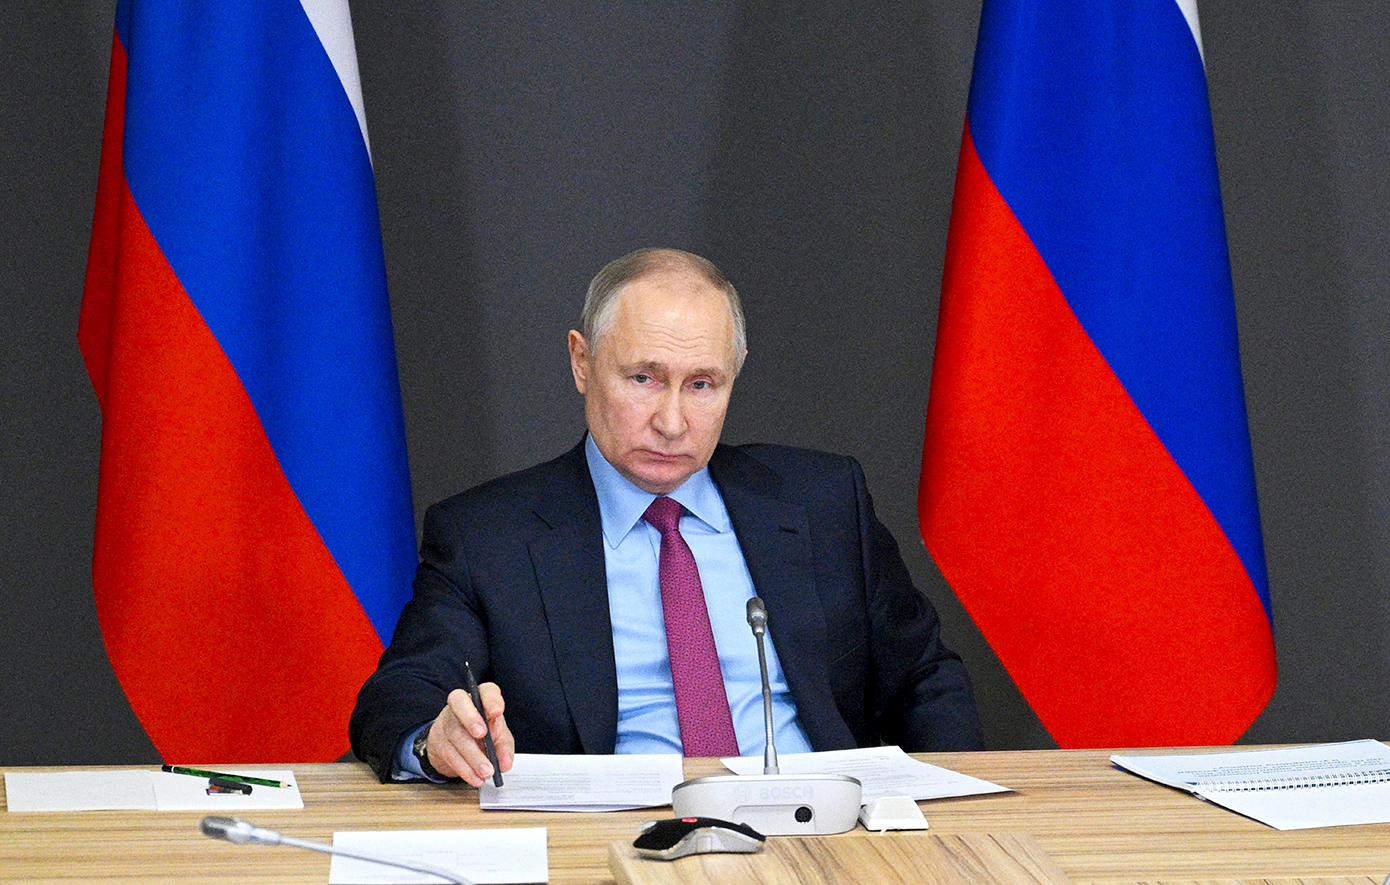 Ο Πούτιν ζήτησε από την FSB να βοηθήσει τις ρωσικές εταιρείες να παρακάμψουν τις δυτικές κυρώσεις